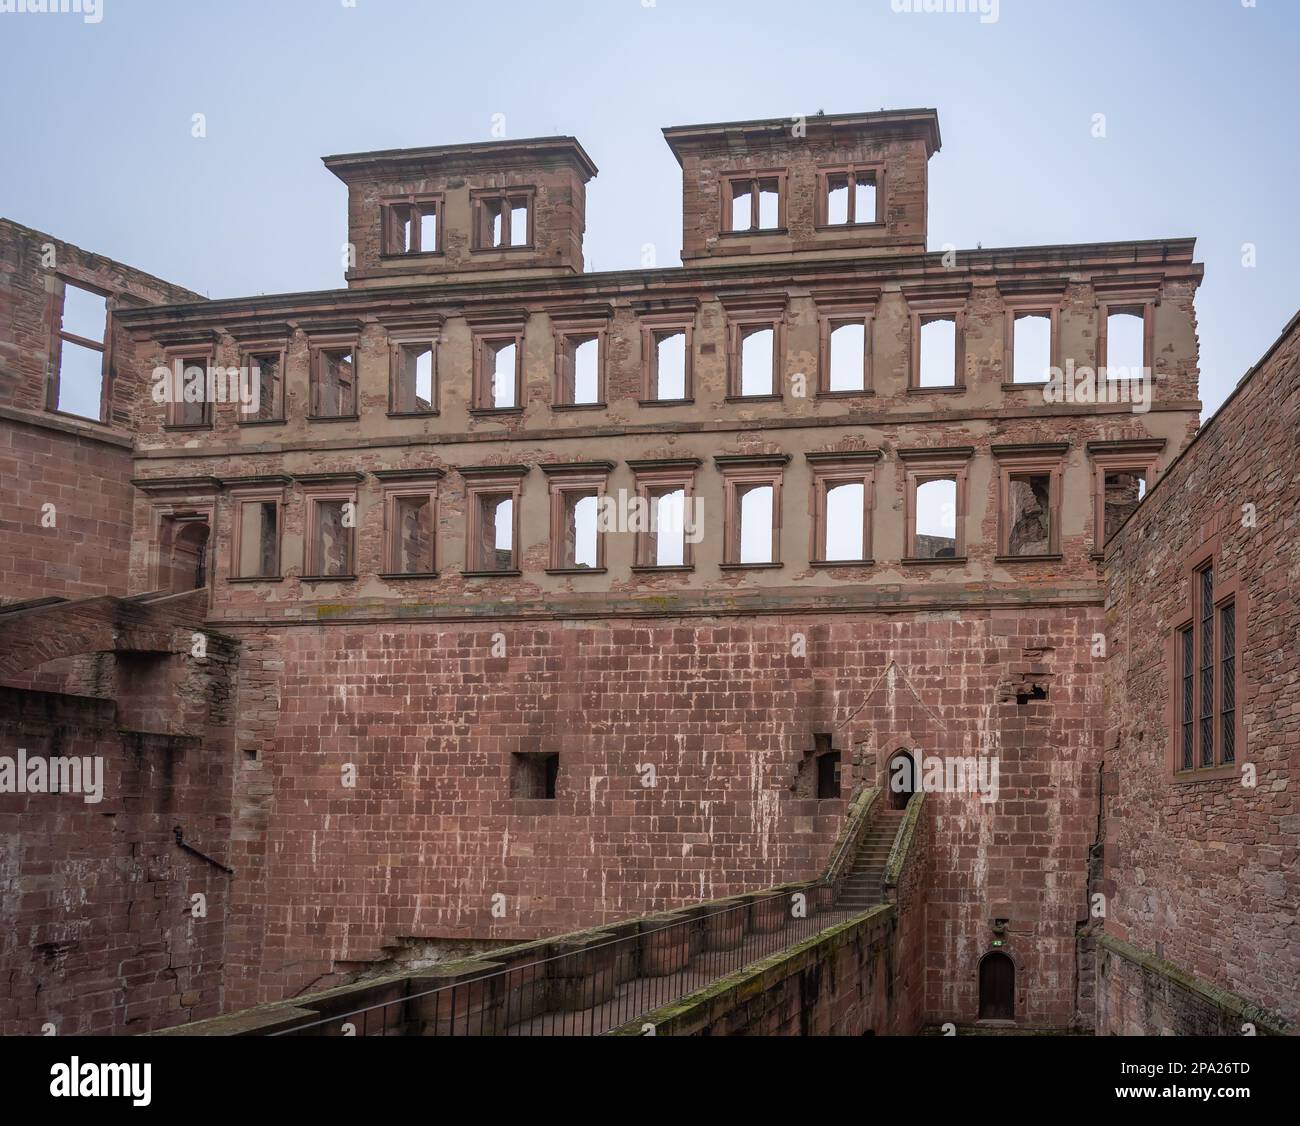 Englischer Flügel im Heidelberger Schloss - Heidelberg, Deutschland Stockfoto